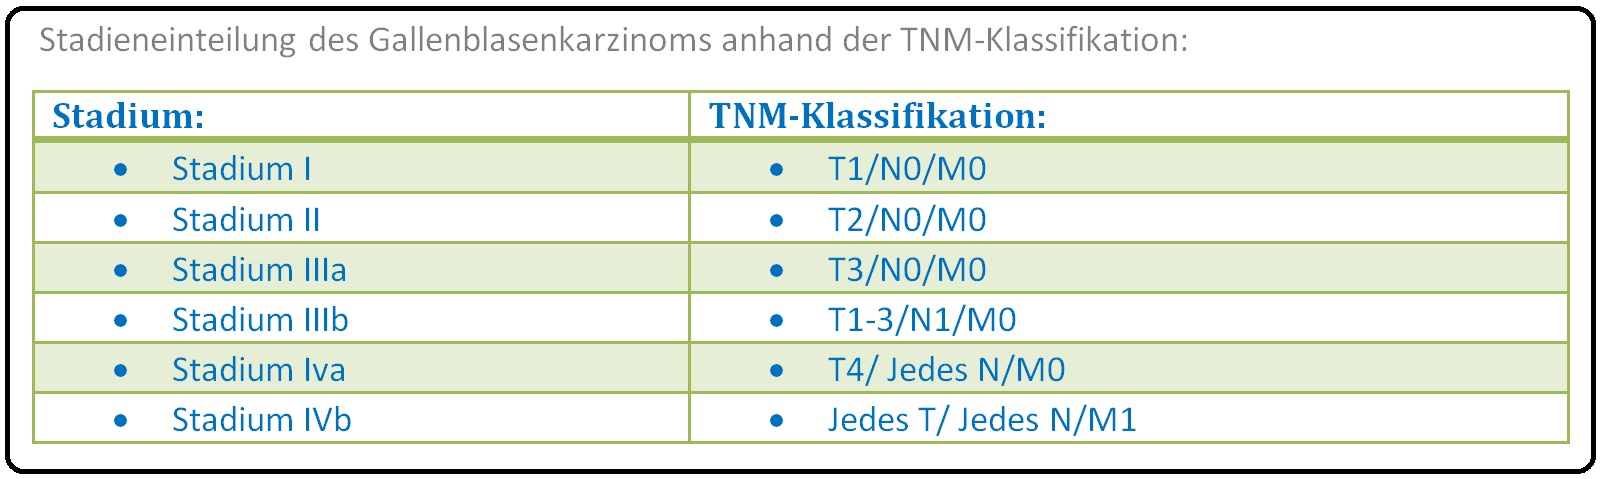 544 Stadieneinteilung des Gallenblasenkarzinoms anhand der TNM Klassifikation